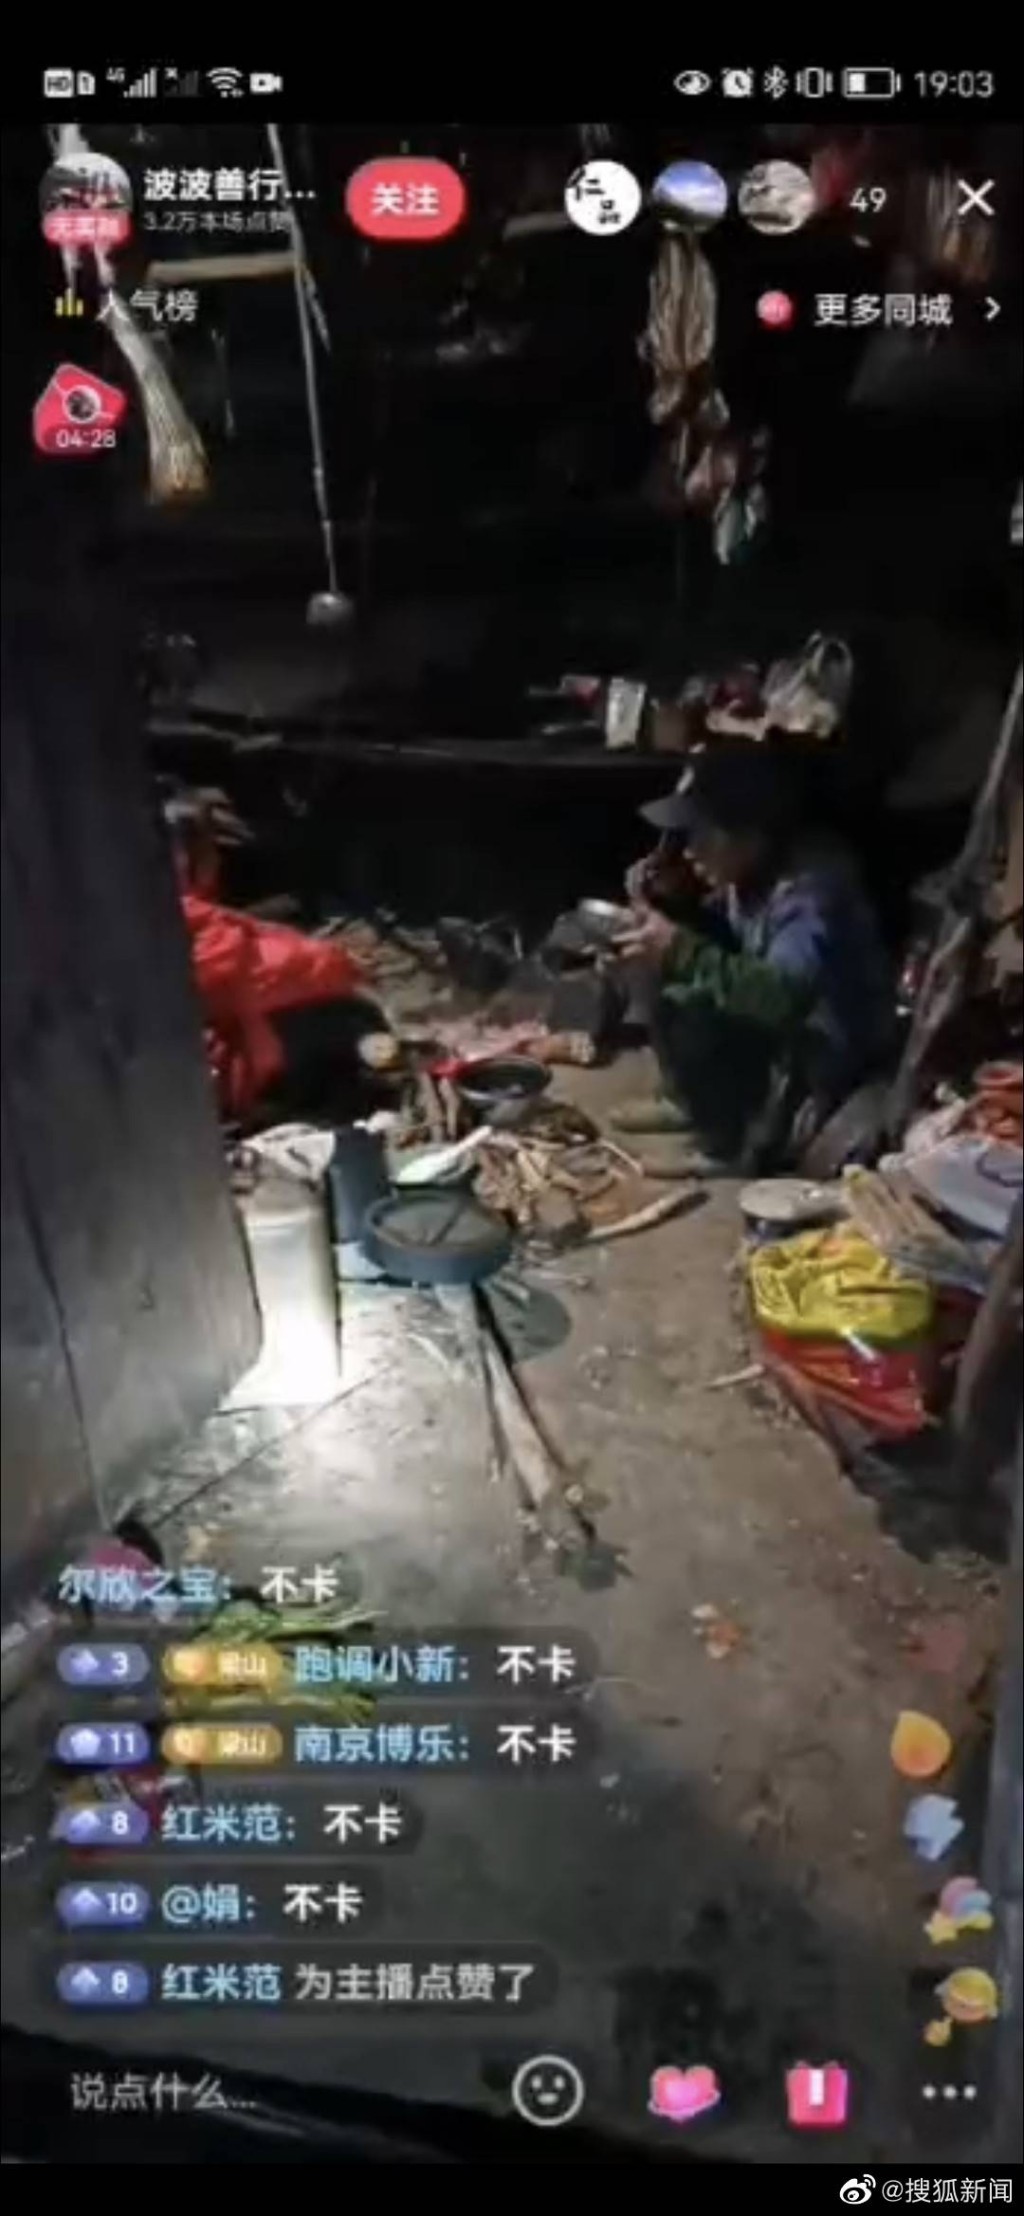 「云南波波」拍摄环境较差的小房子声称是村民住家，实际上只是杂物房并不住人。 网图